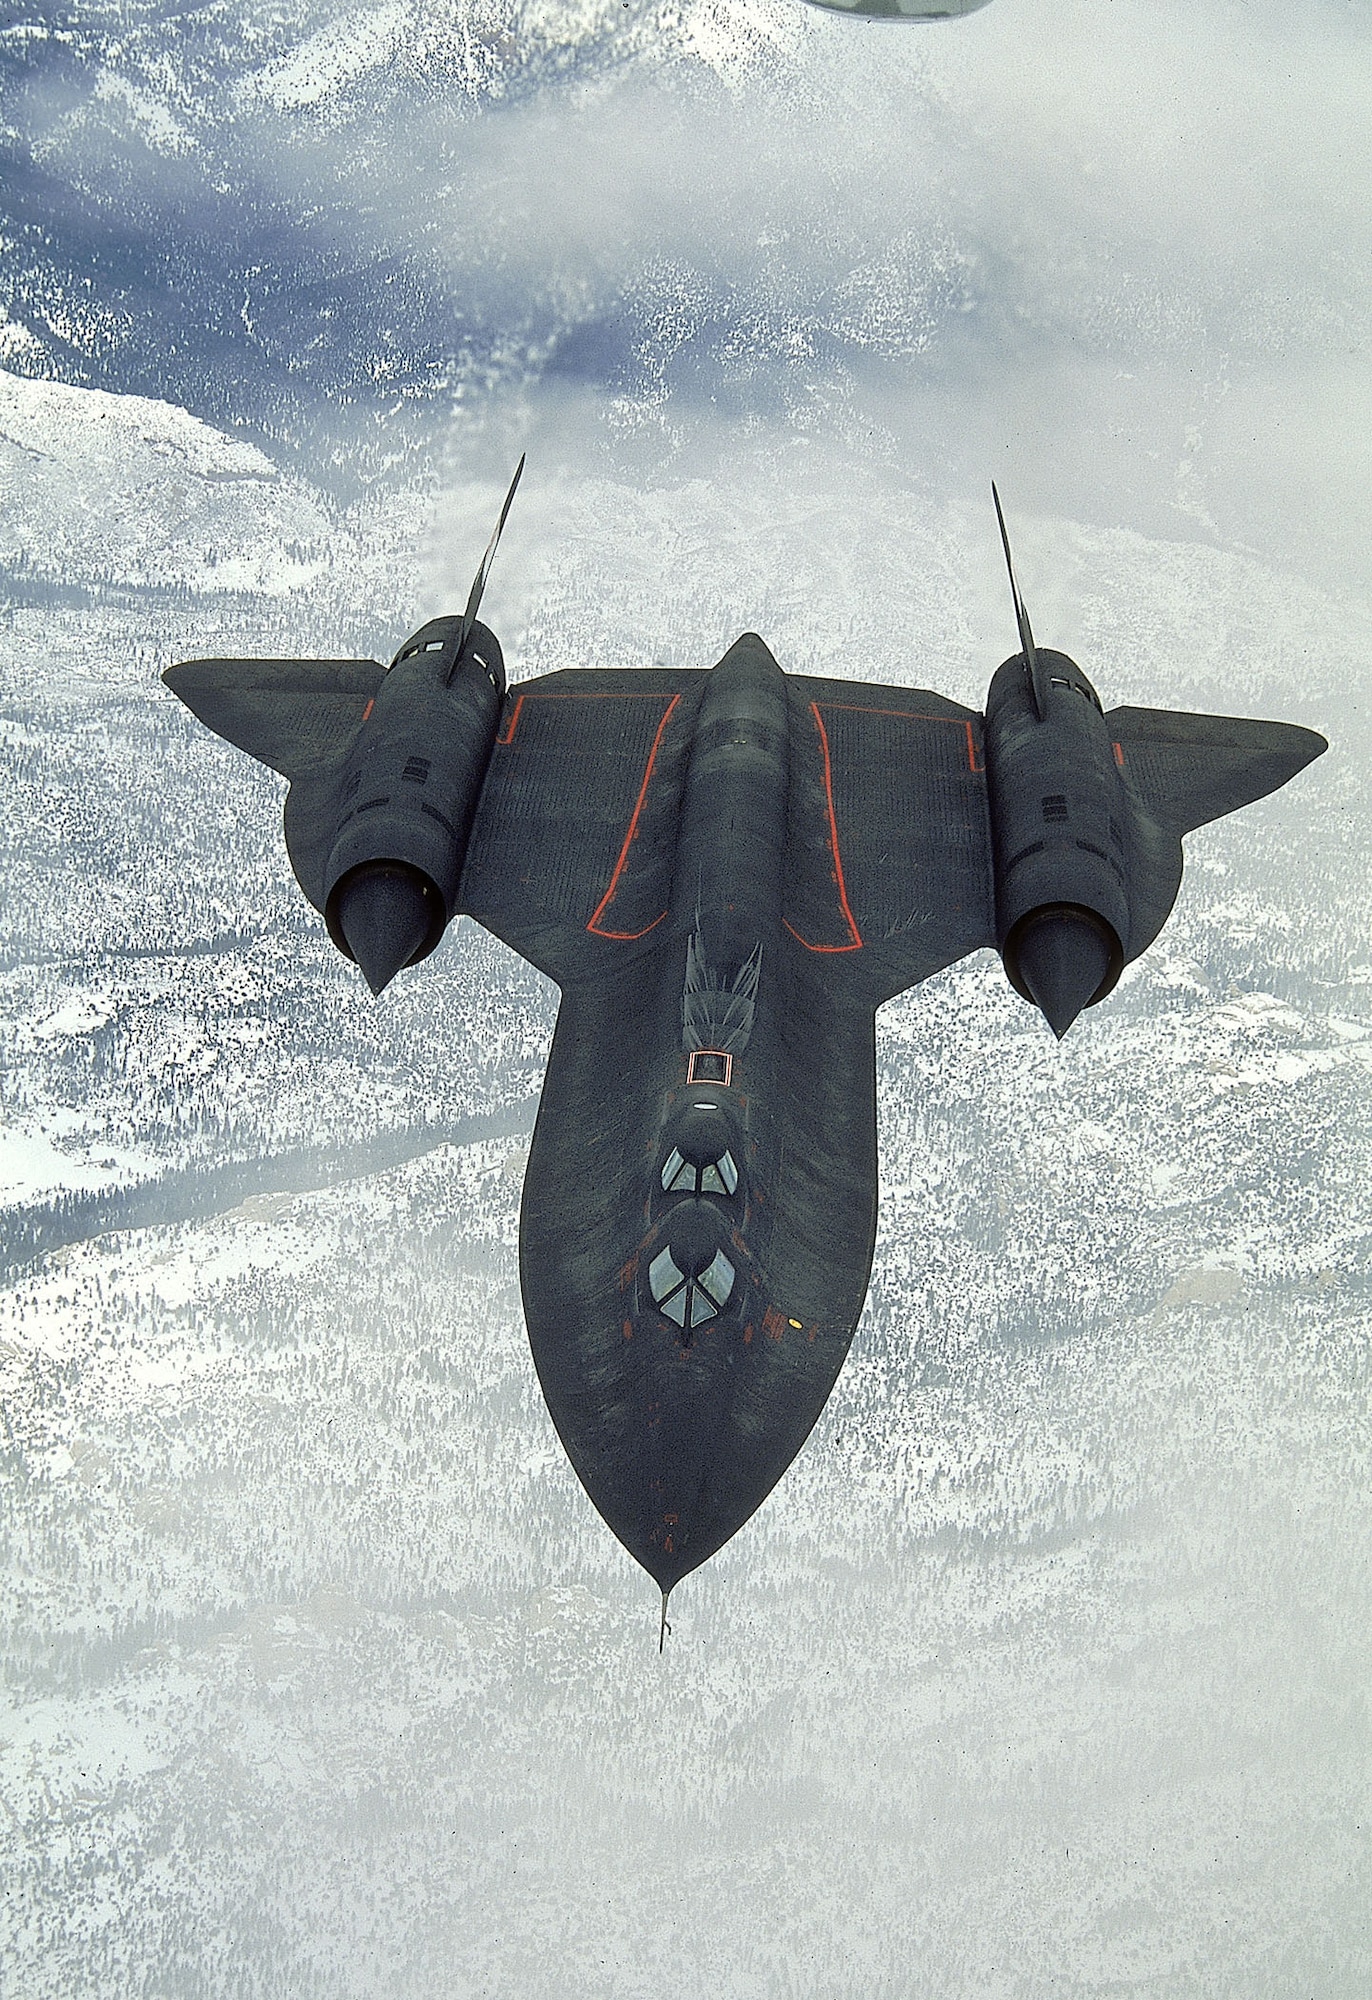 Sr-71 Blackbird Replacement